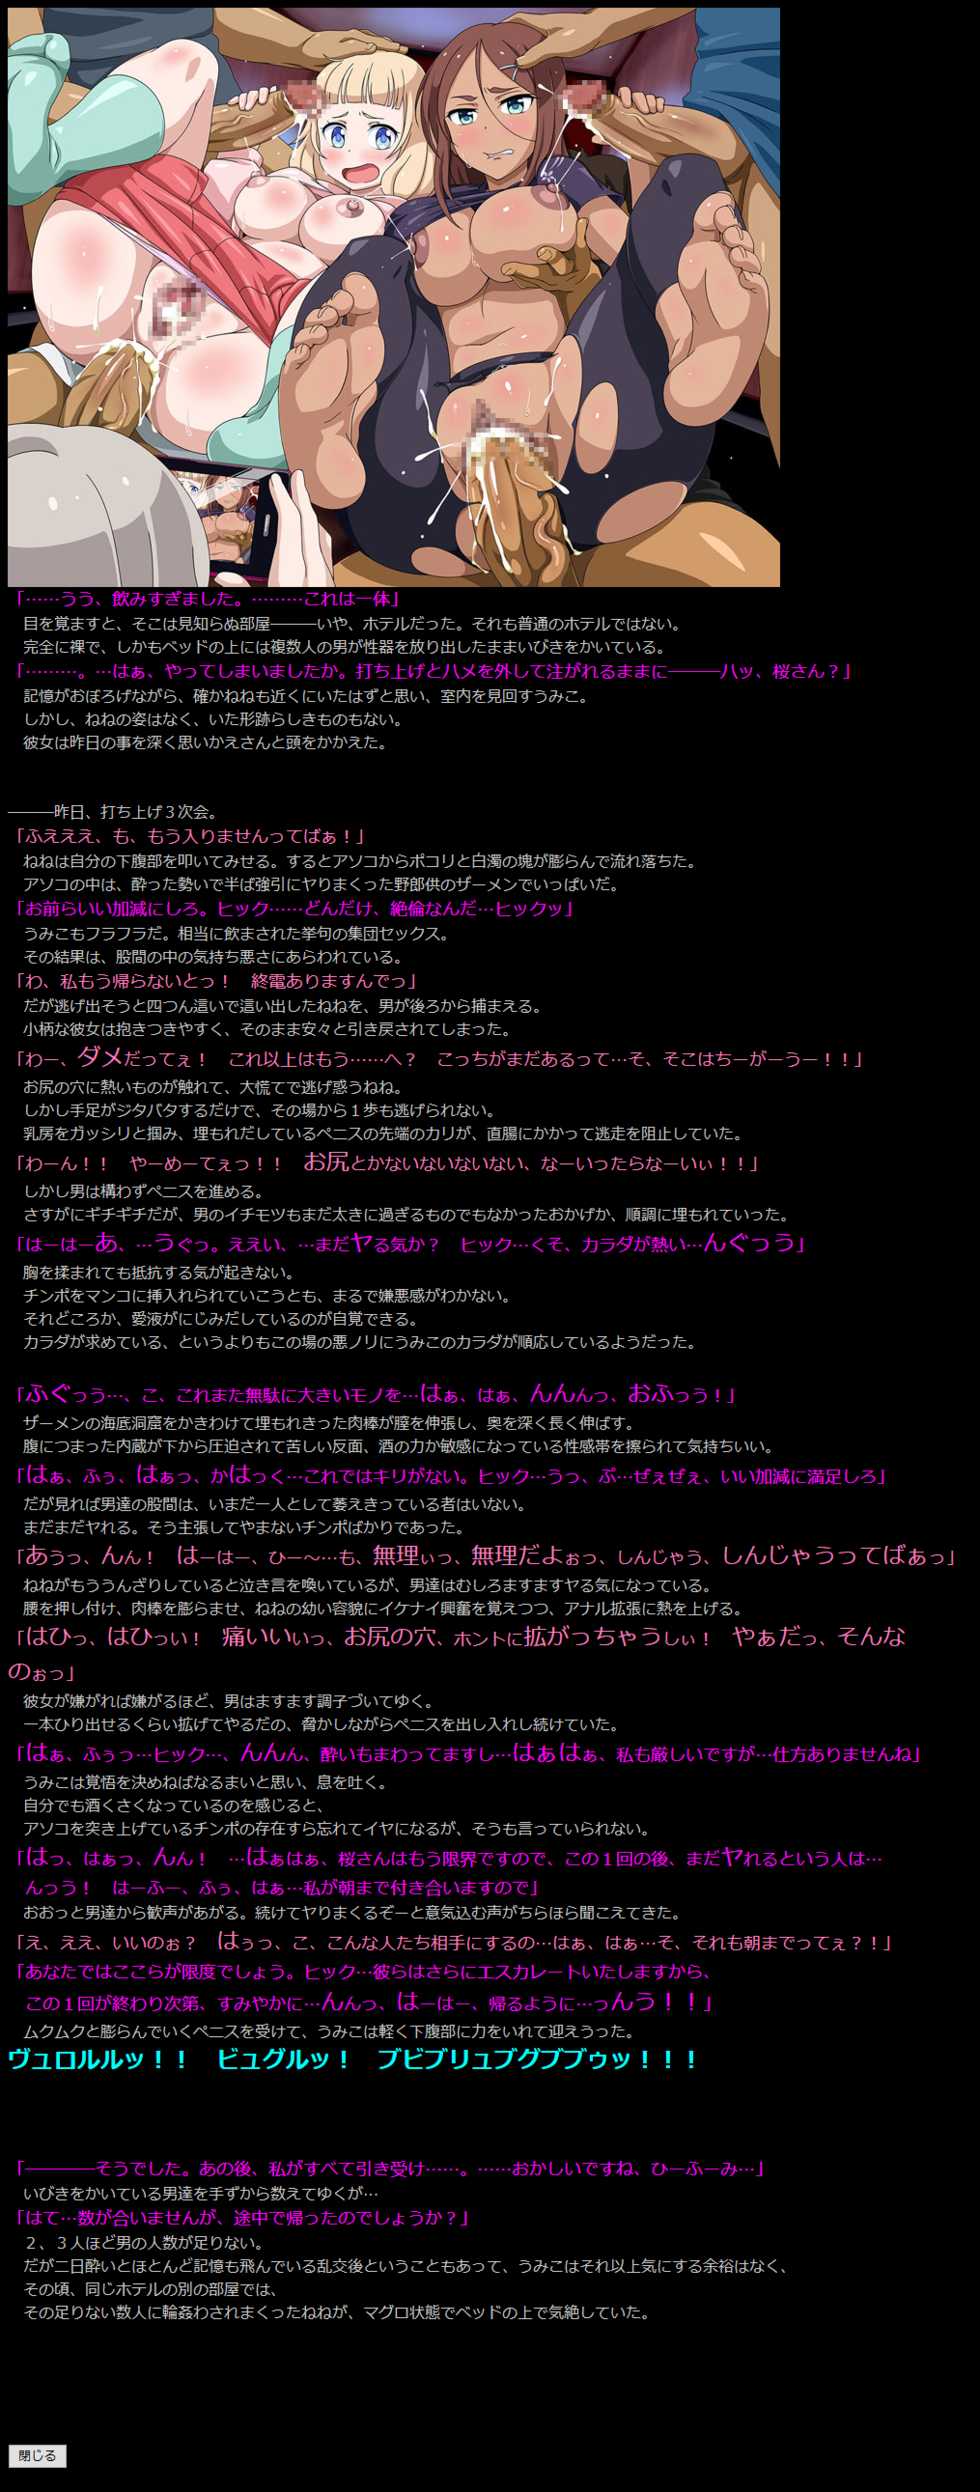 [LolitaChannel (Arigase Shinji)] Yuumei Chara Kannou Shousetsu CG Shuu No.359!! NEW GAME HaaHaa CG Shuu (NEW GAME!) - Page 6